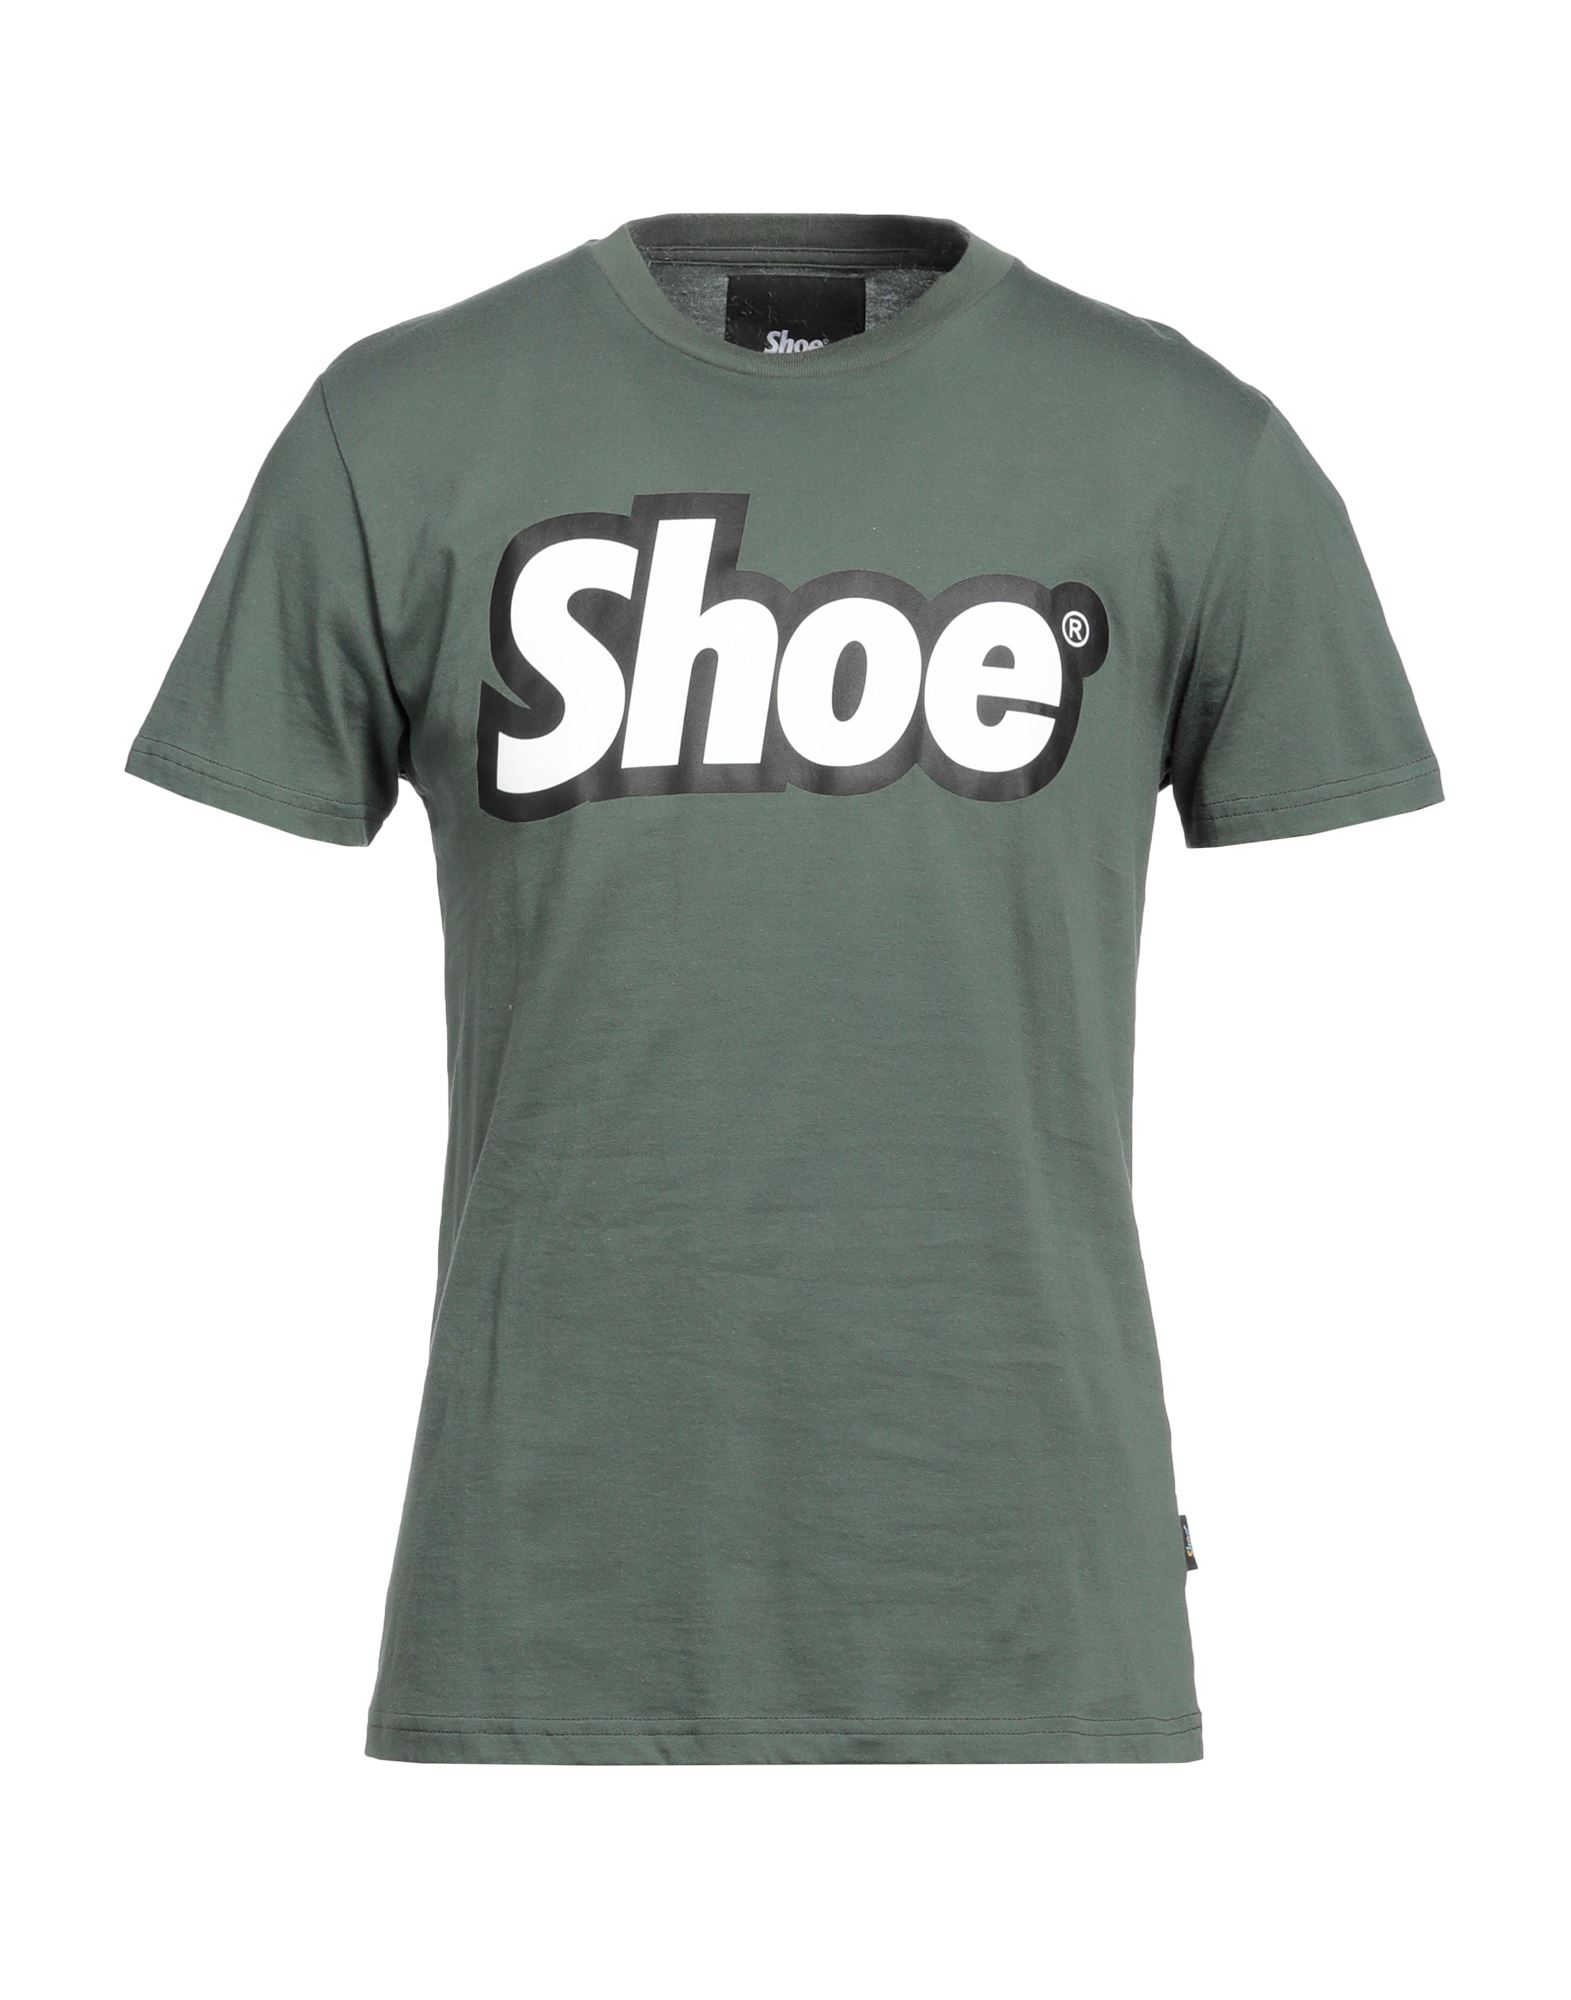 Shoe® Shoe Man T-shirt Military Green Size Xxl Cotton